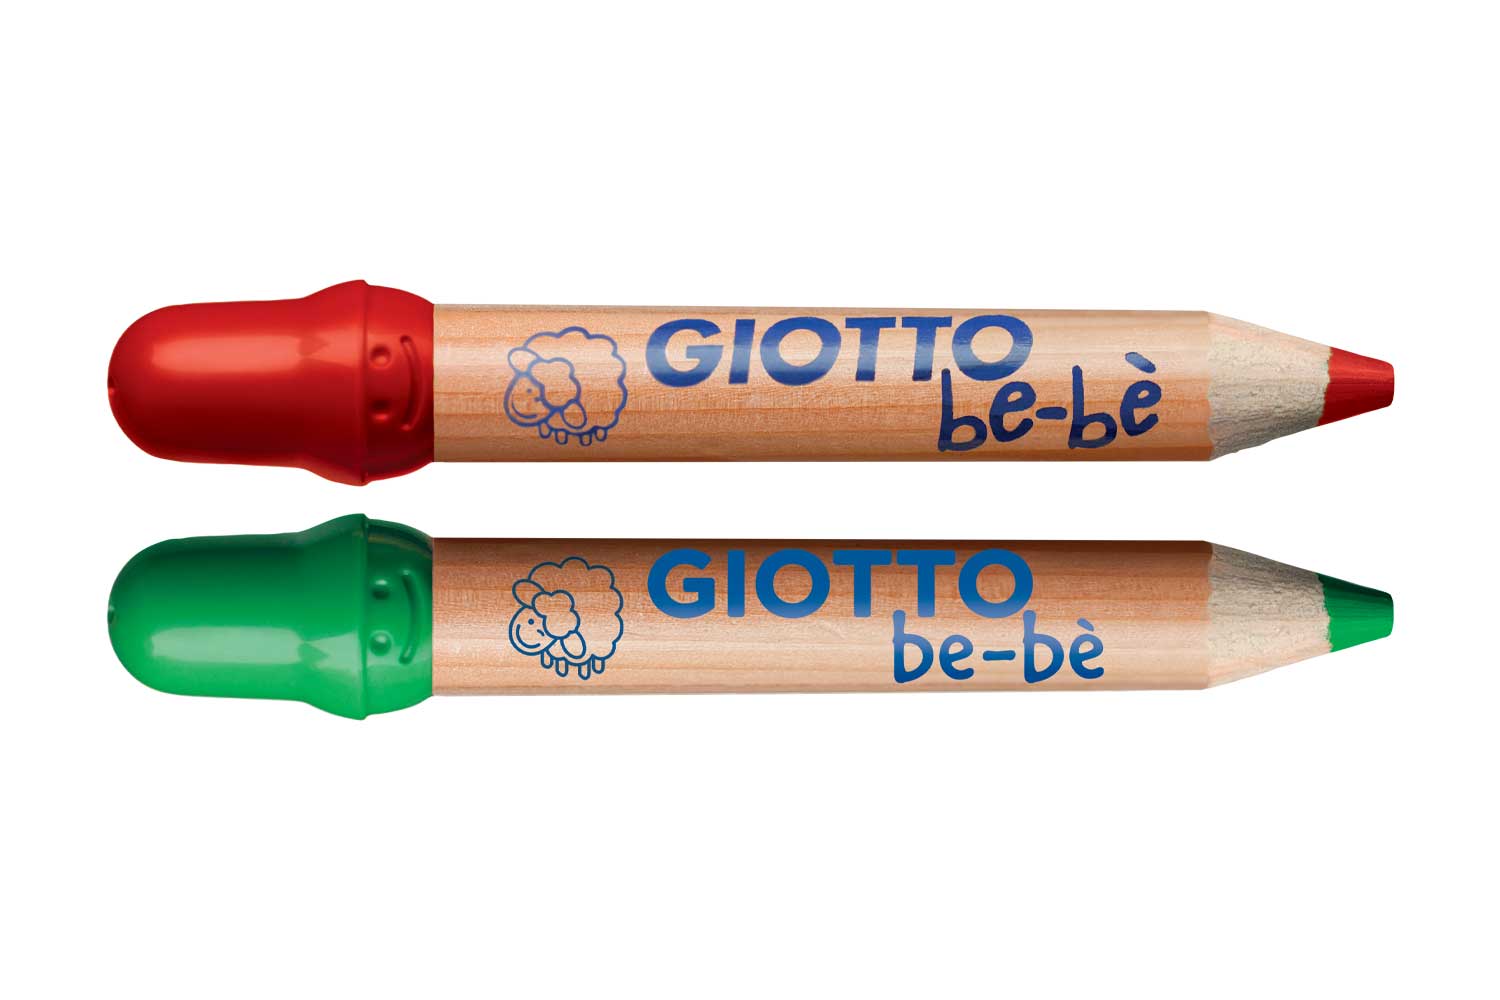 Giotto be-bè crayons de couleurs, 12 pces